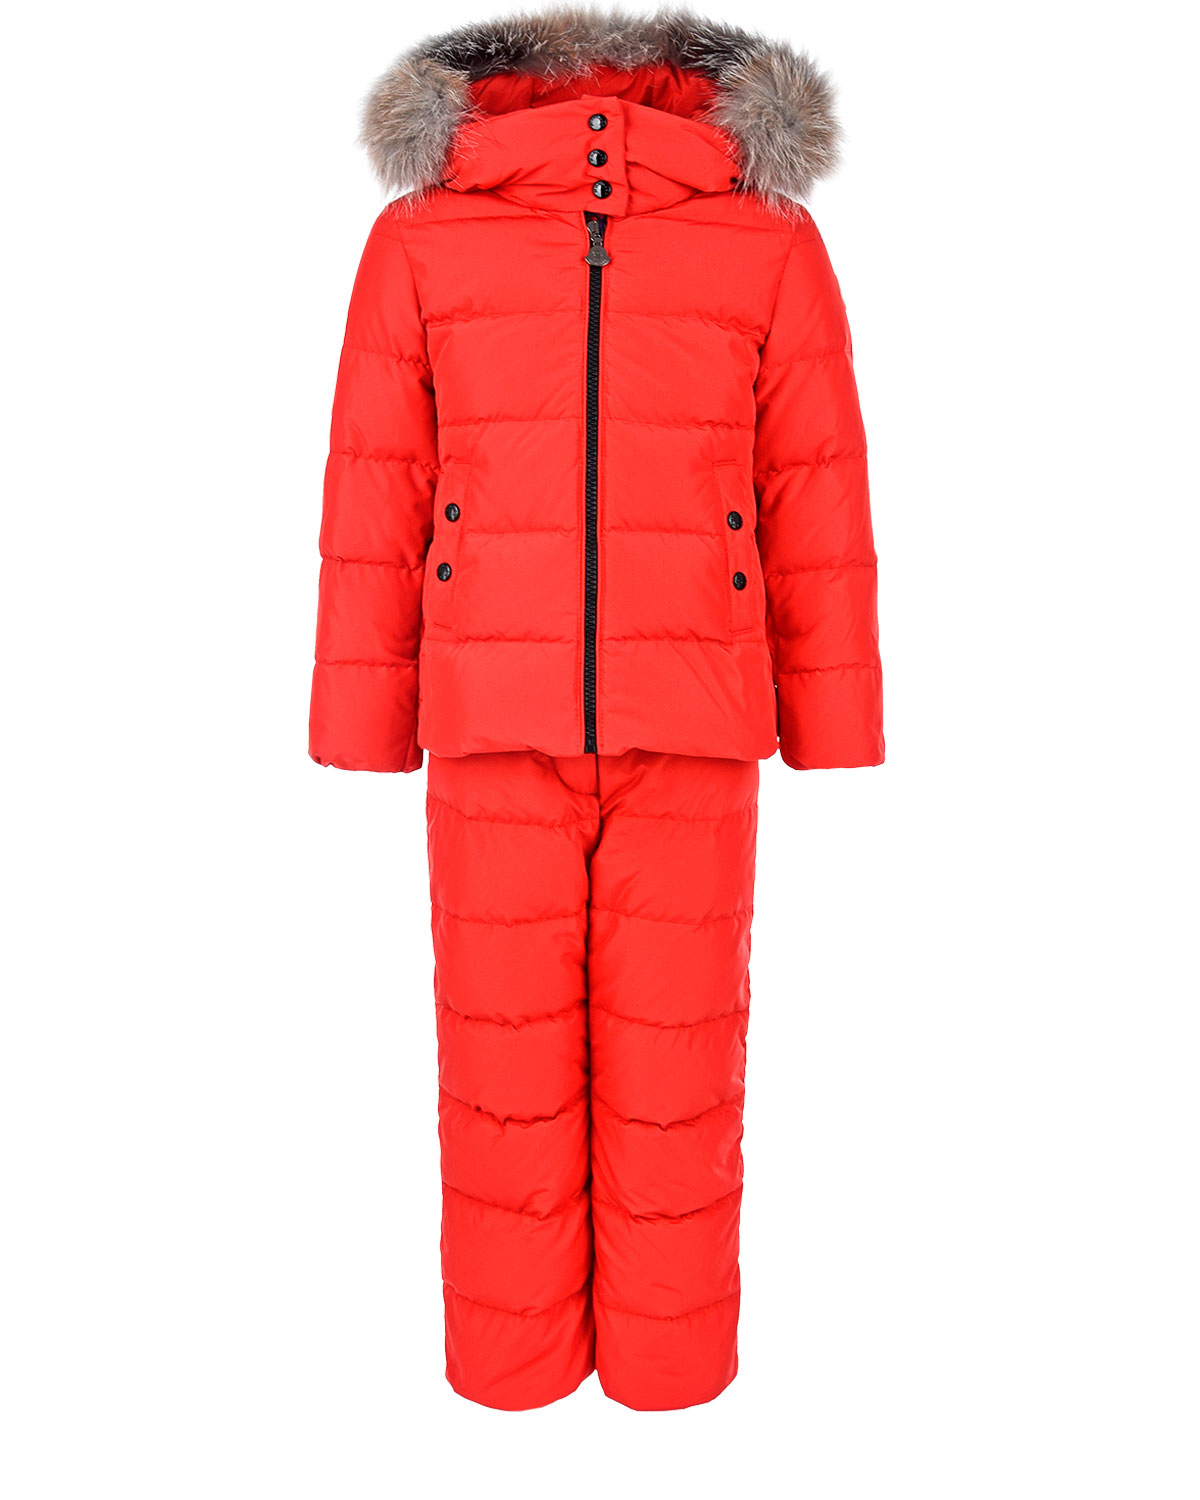 Красный пуховый комплект из куртки и комбинезона Moncler детский, размер 104